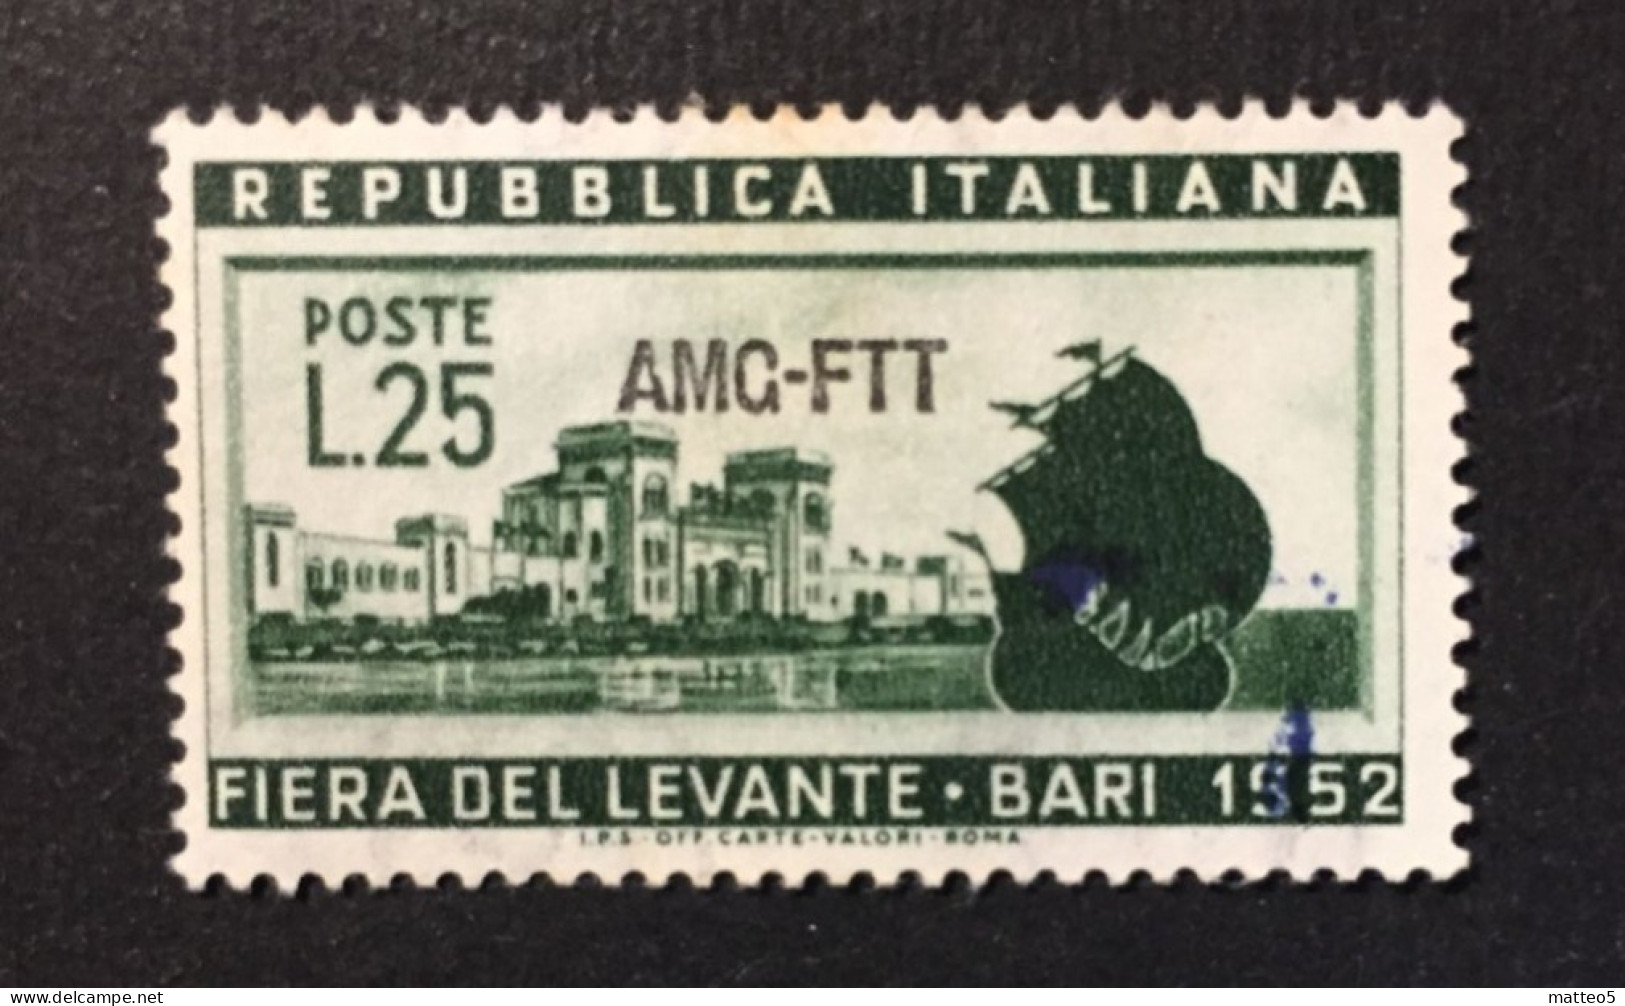 1952 - Italia Trieste AMG-FTT - Fiera Del Levante Bari  - A1 - Nuovi